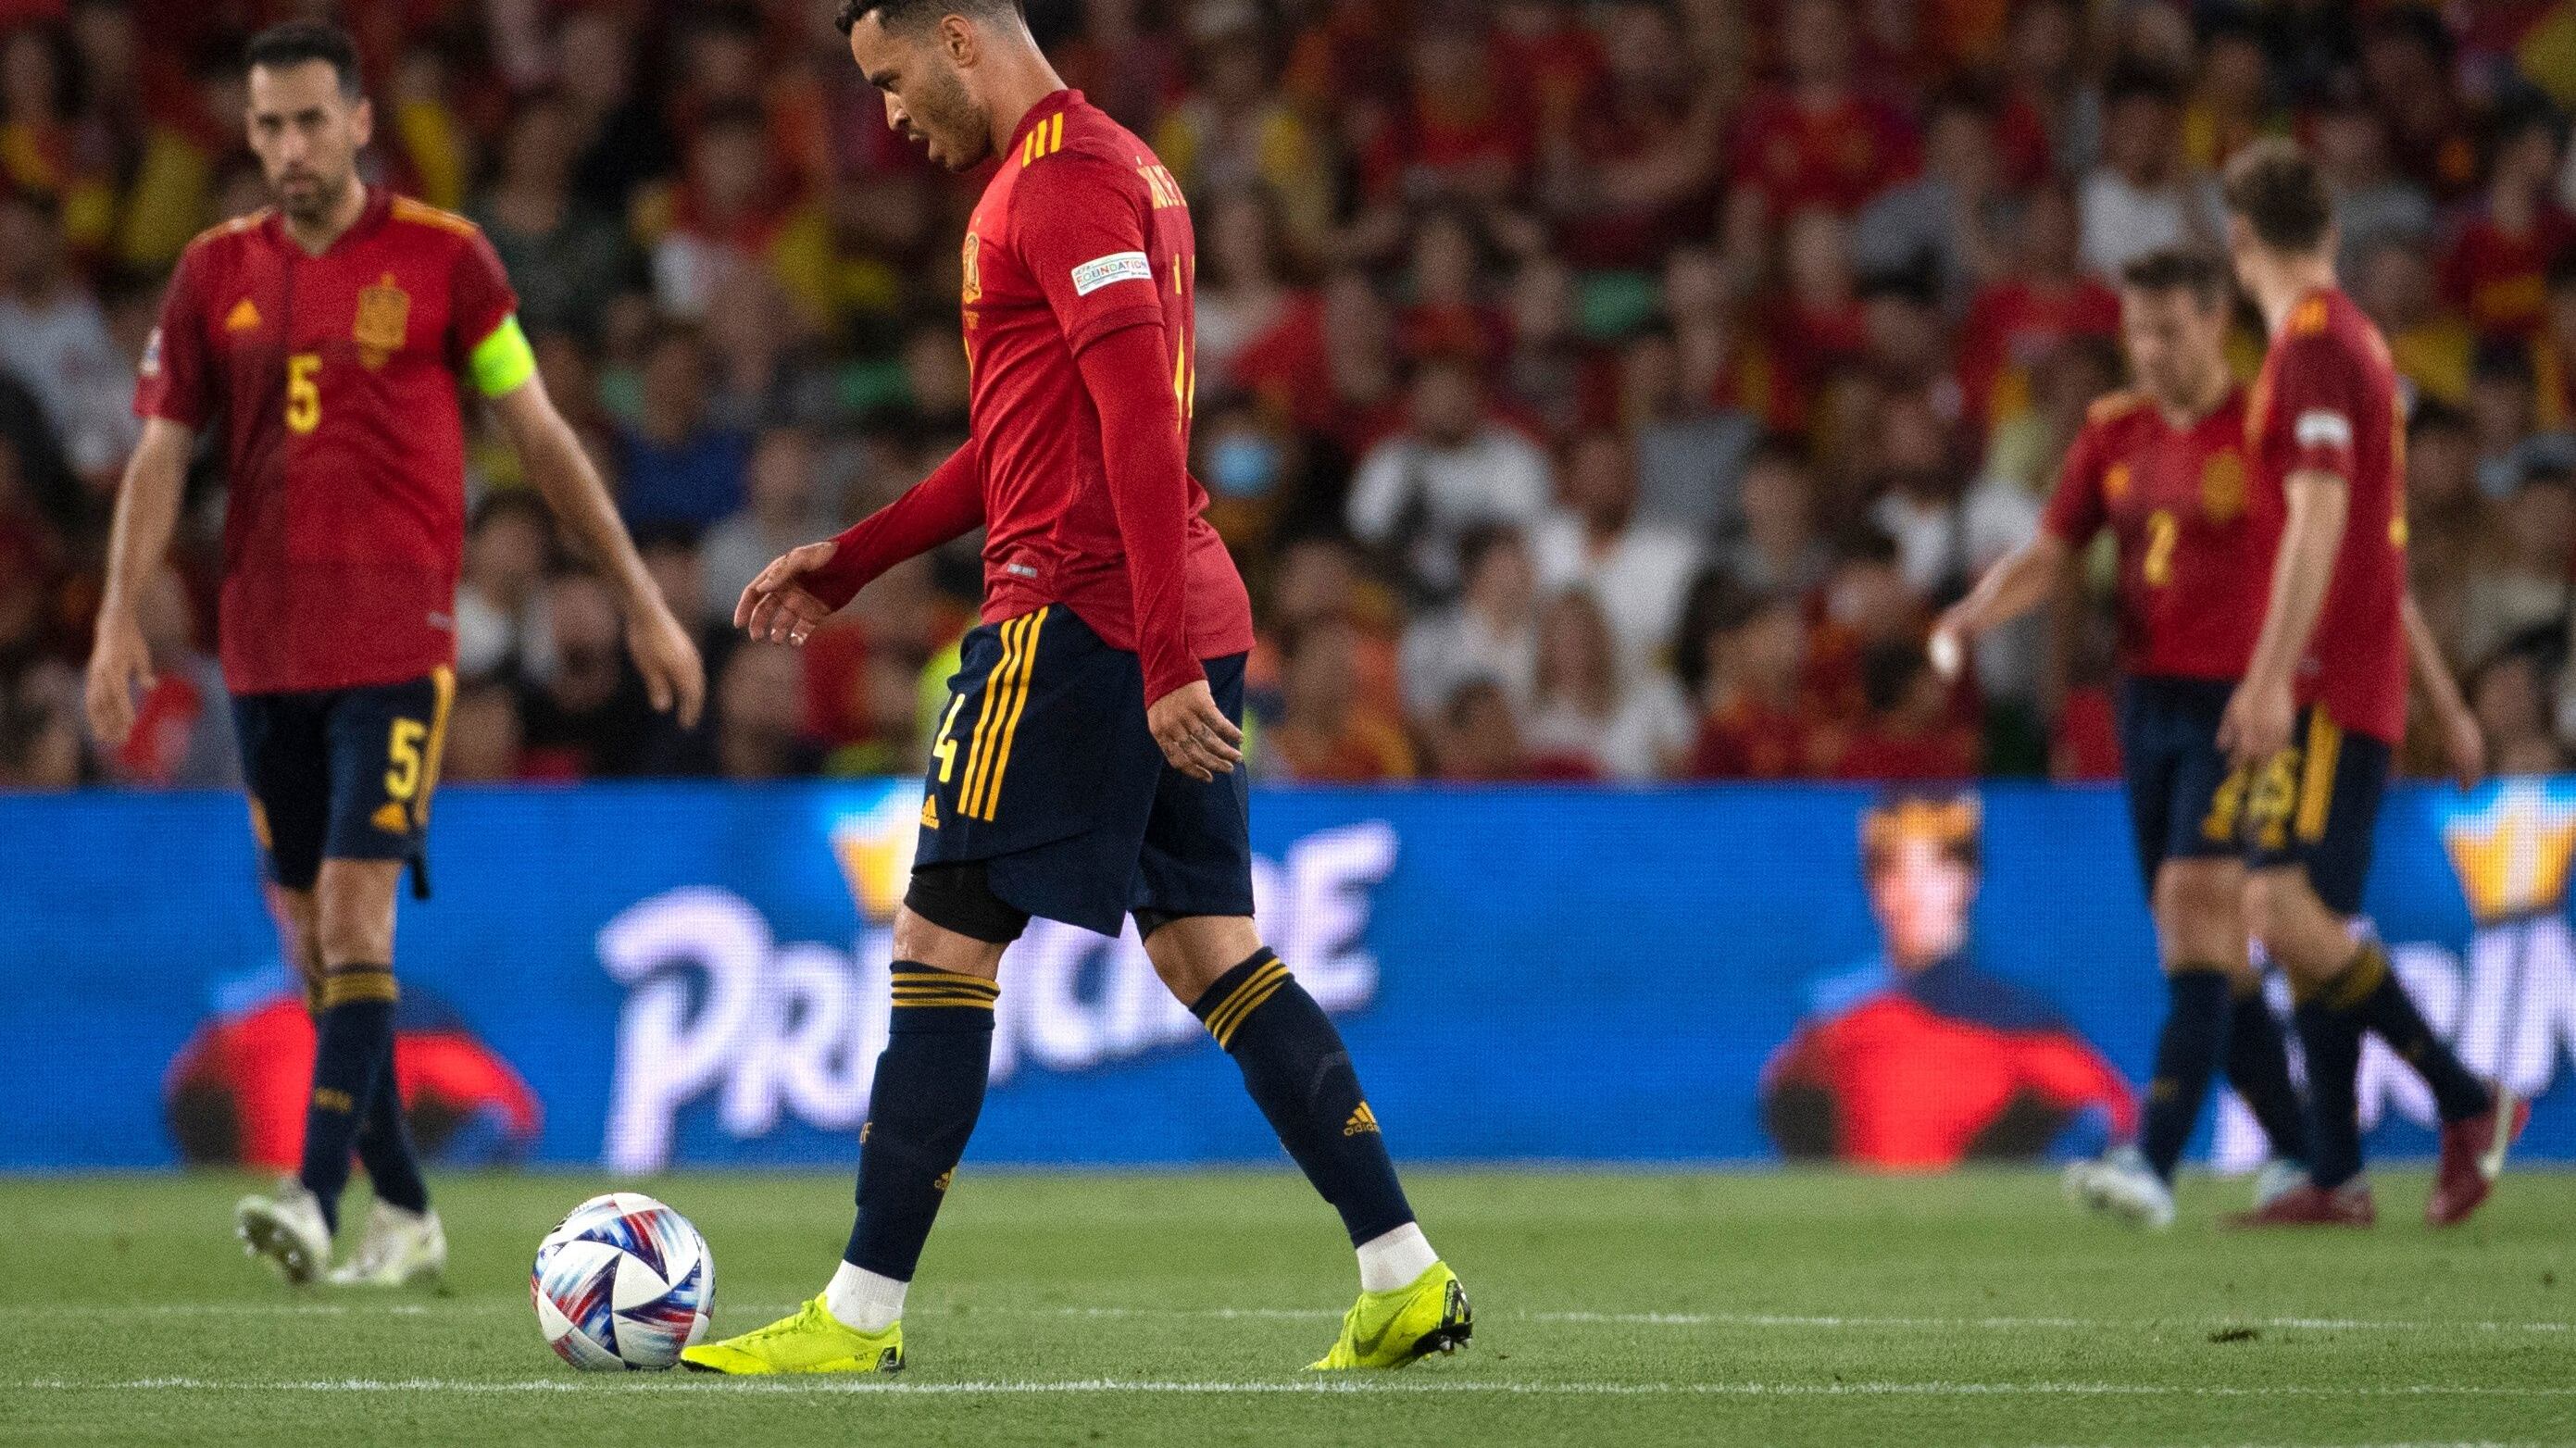 La Selección de España empató 2-2 con república Checa y su bajo nivel preocupa a todos